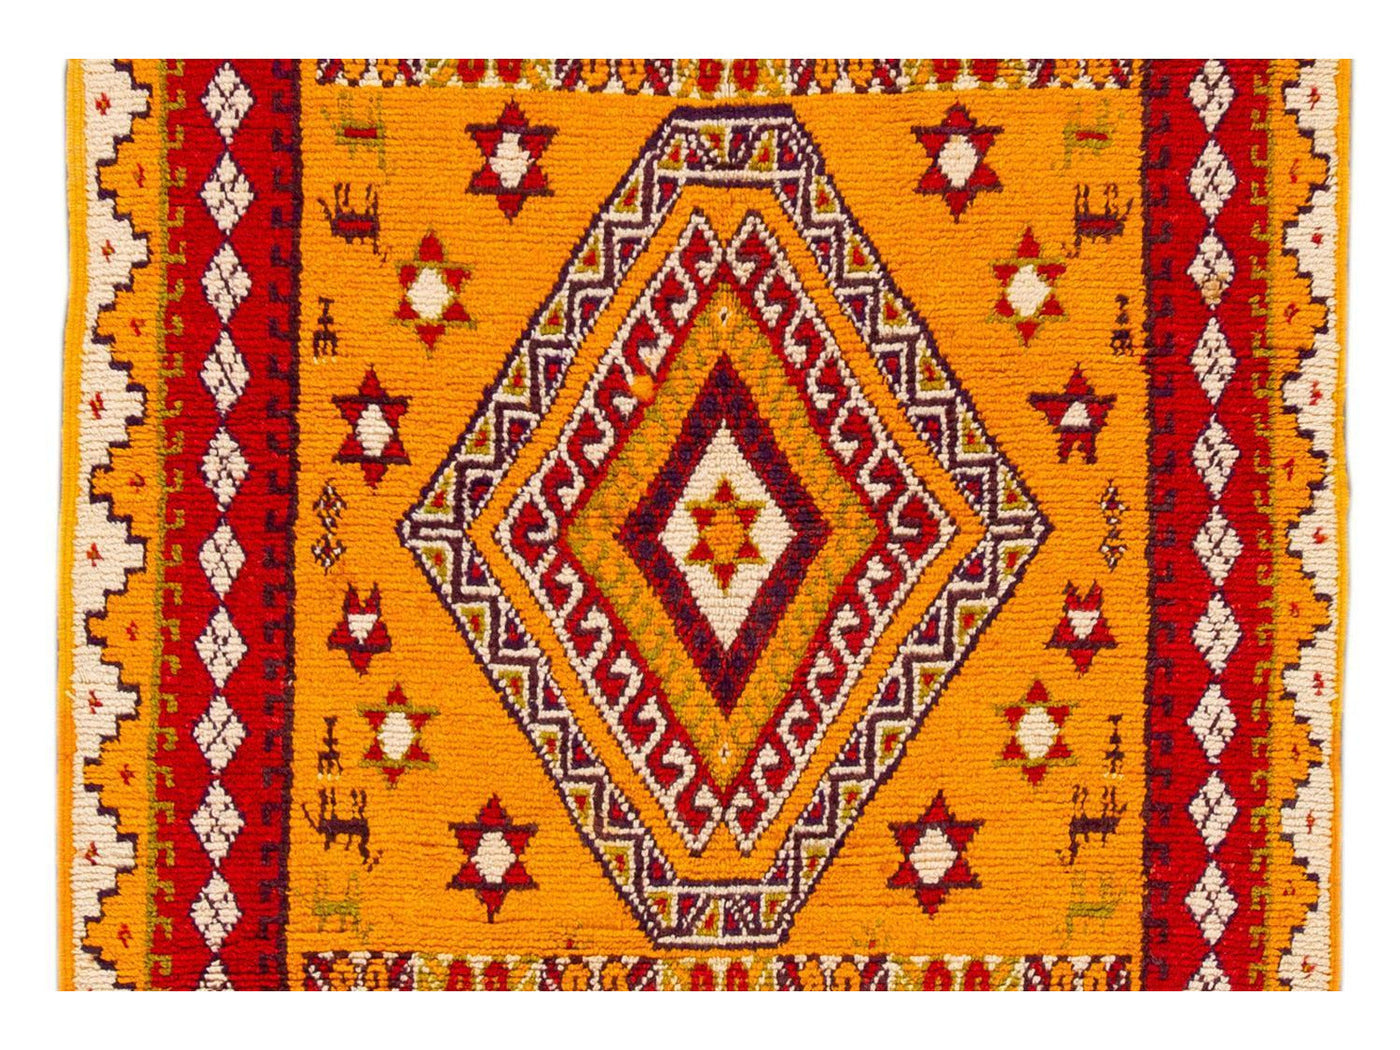 Vintage Moroccan Tribal Wool Rug 5 X 11